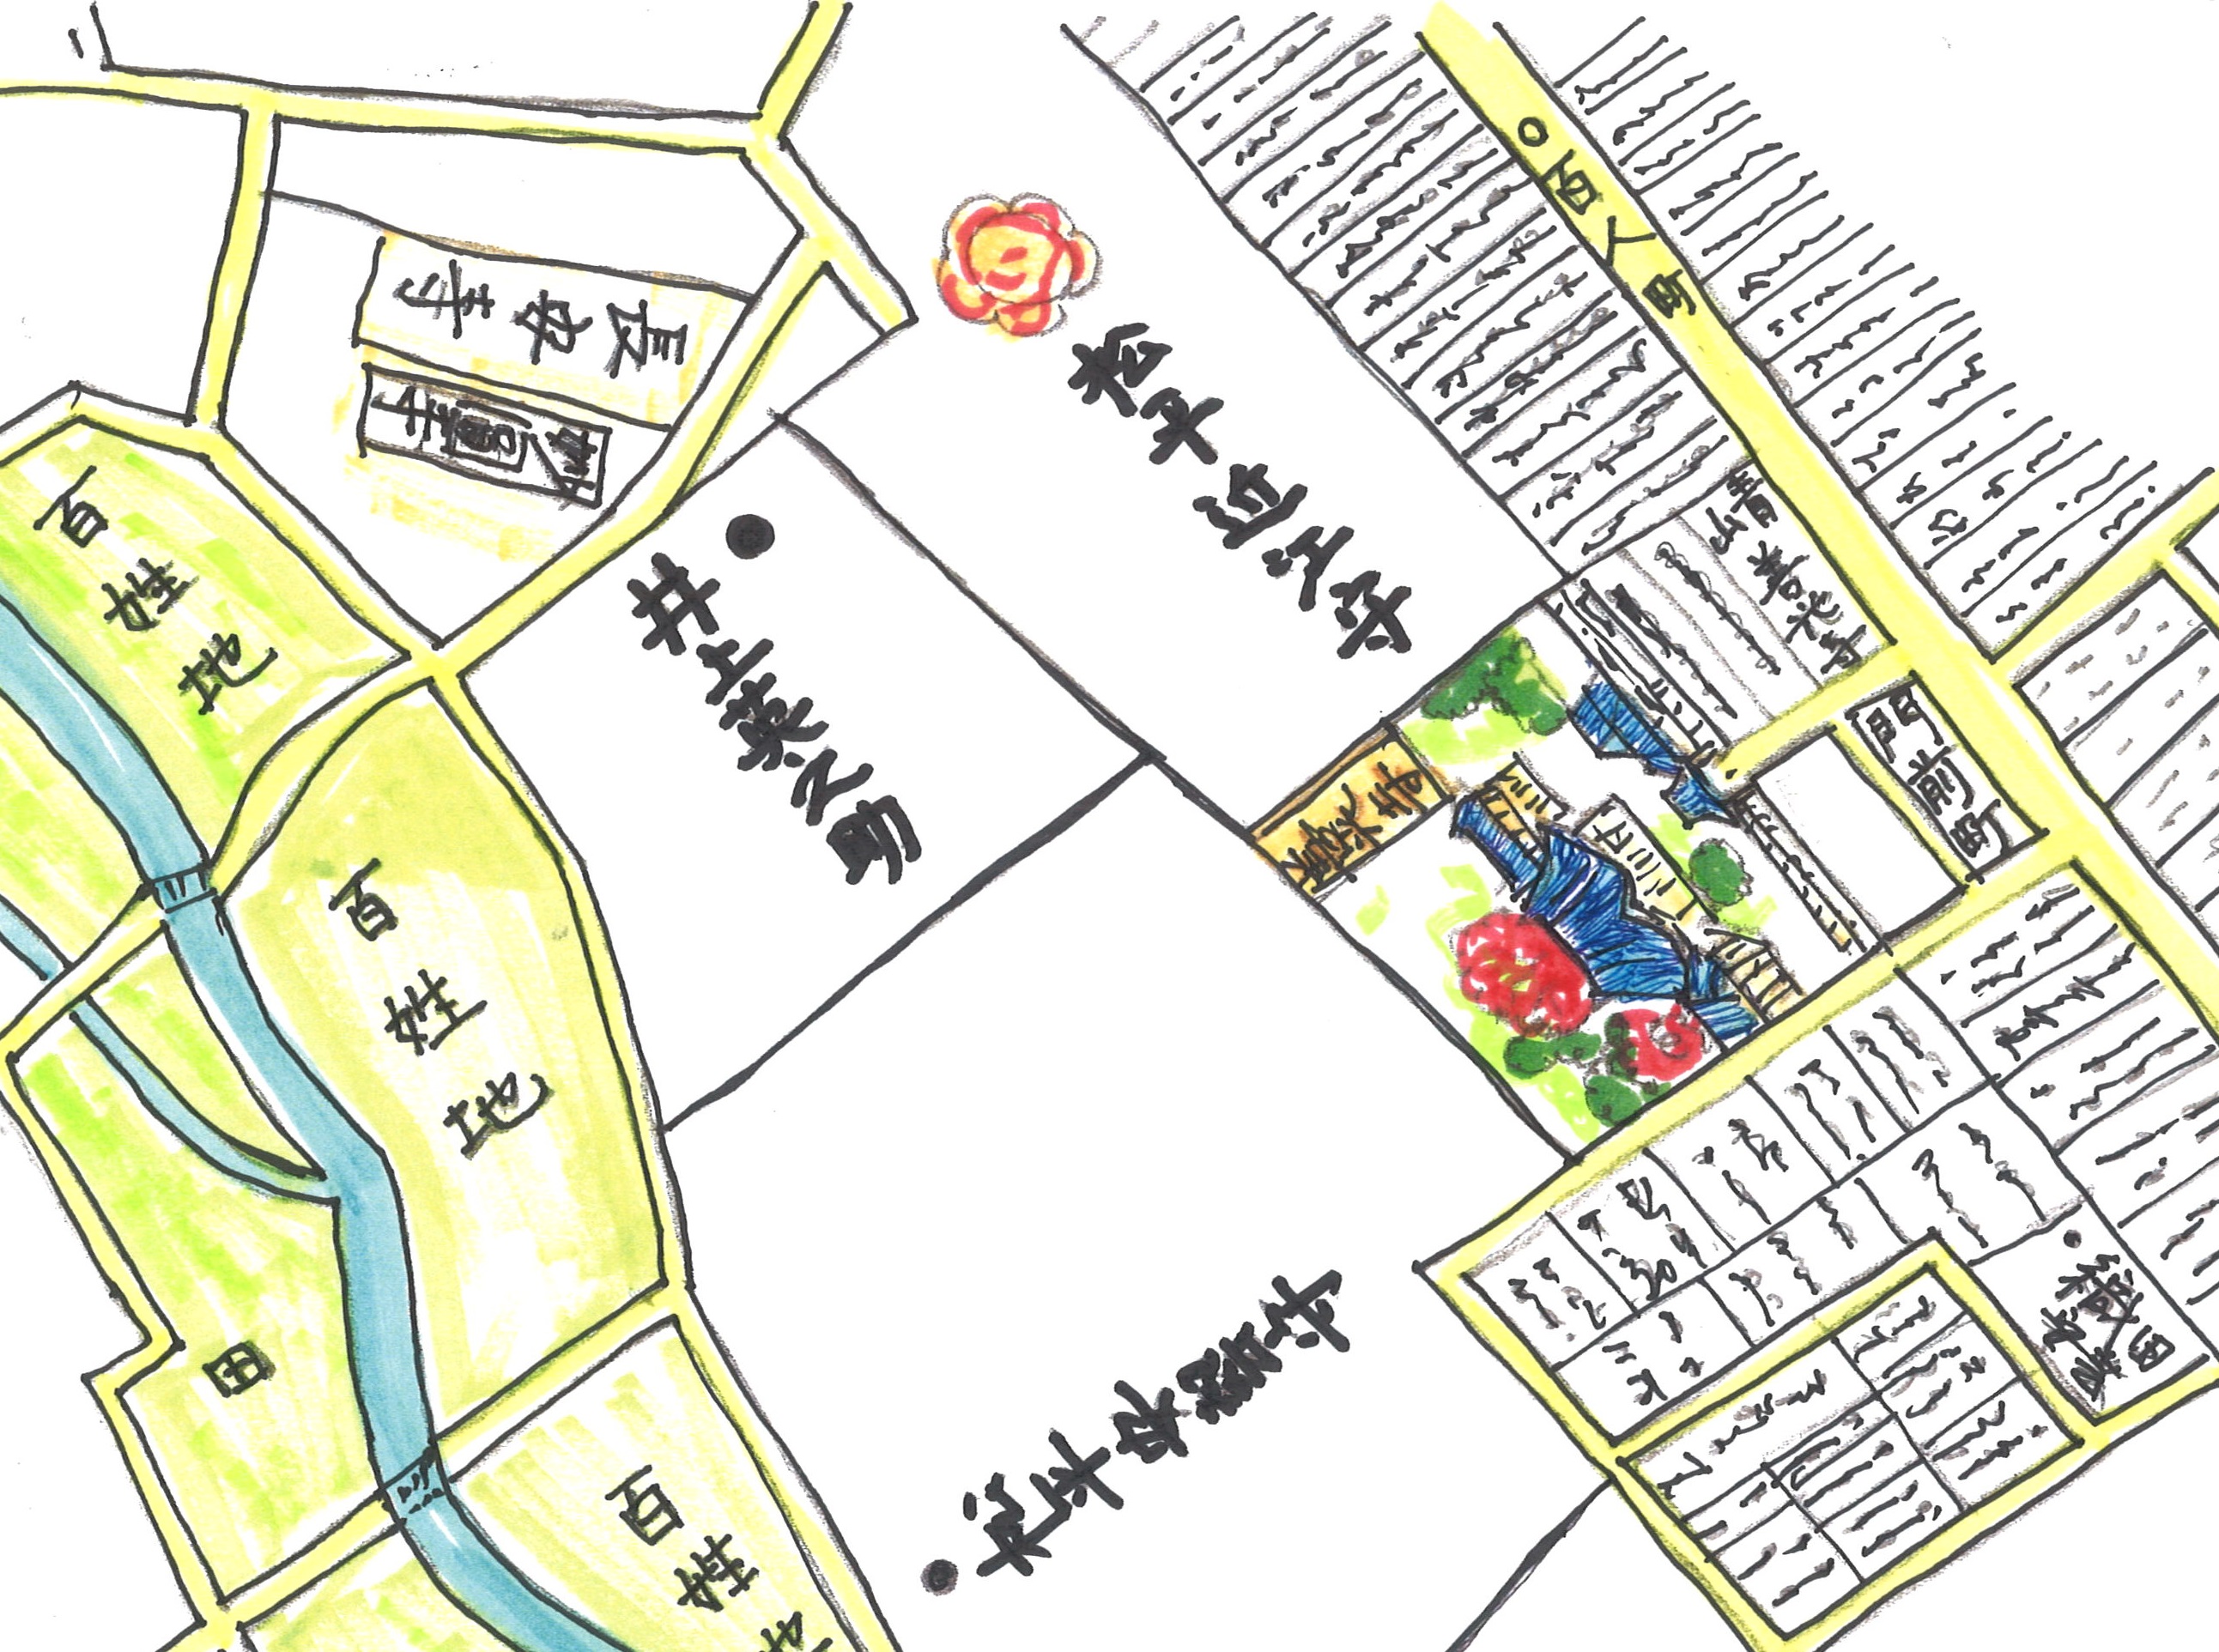 お江戸青山の古地図散歩 | カシミヤニットのカスタムオーダー UTO